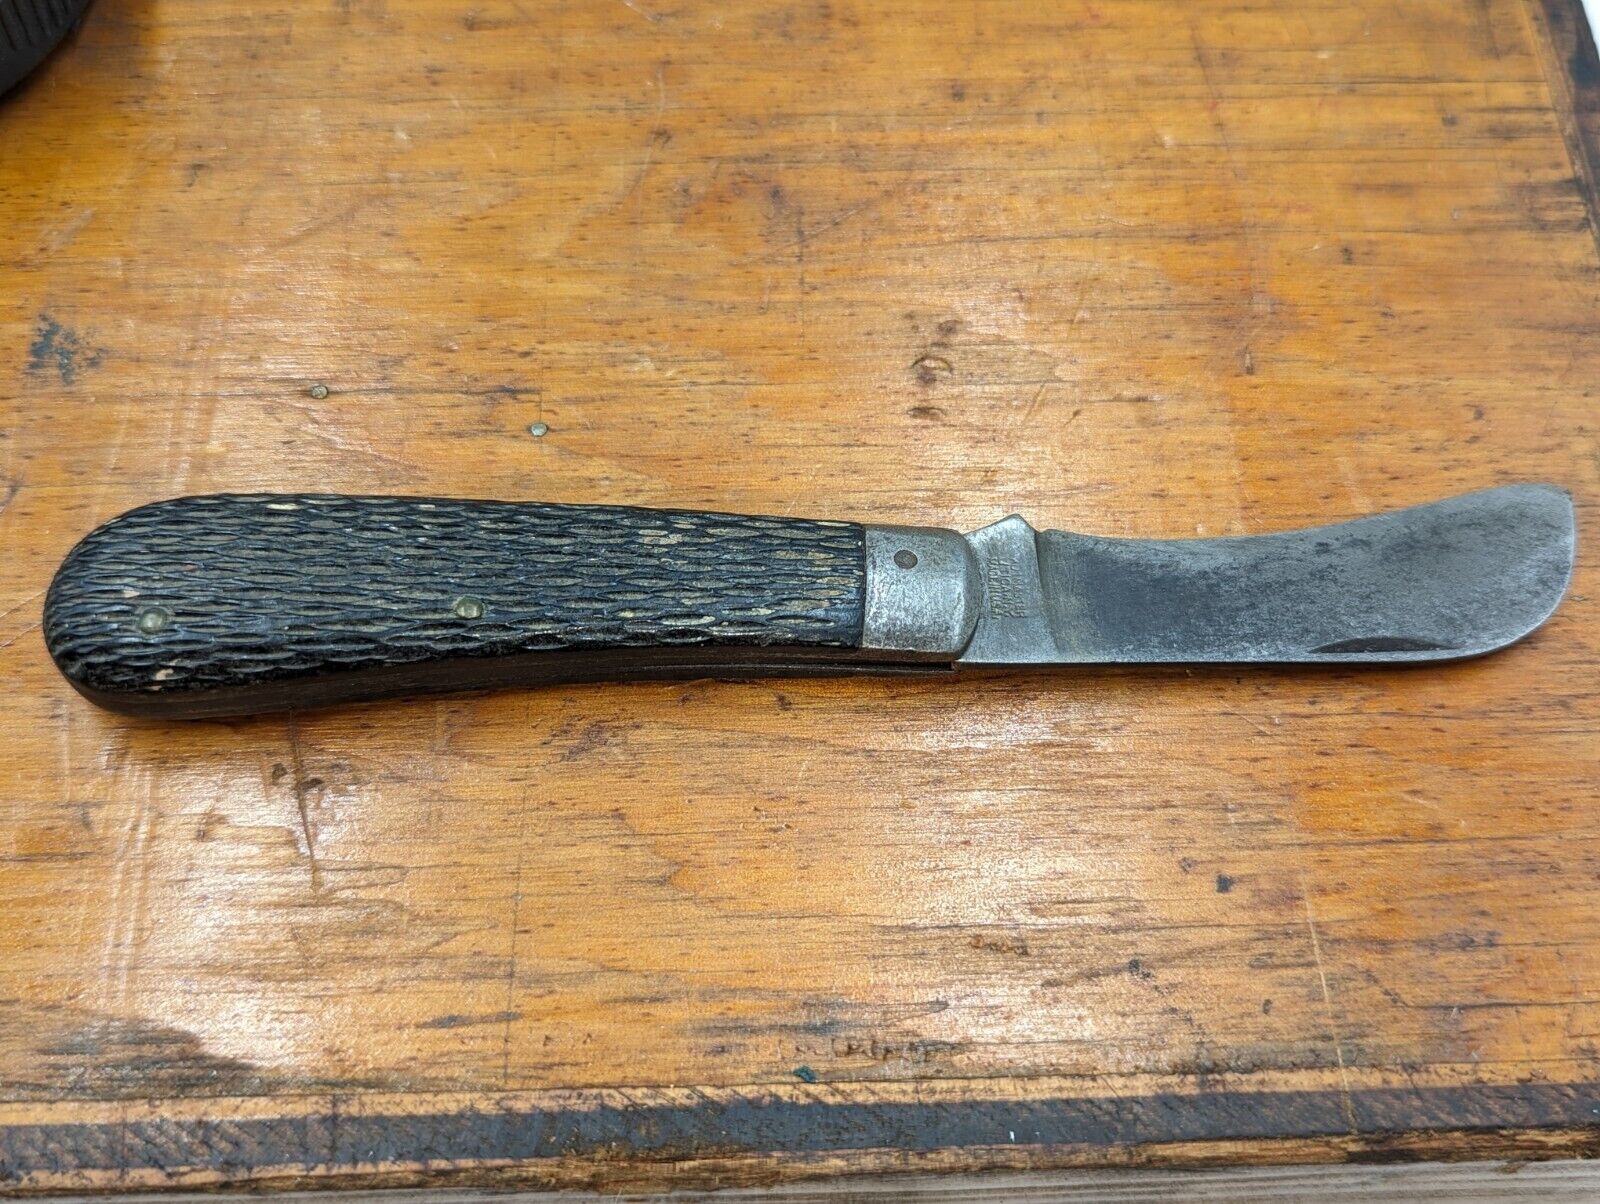 VINTAGE KUTMASTER HAWKBILL LINER LOCK FOLDING POCKET KNIFE MADE IN UTICA NY USA